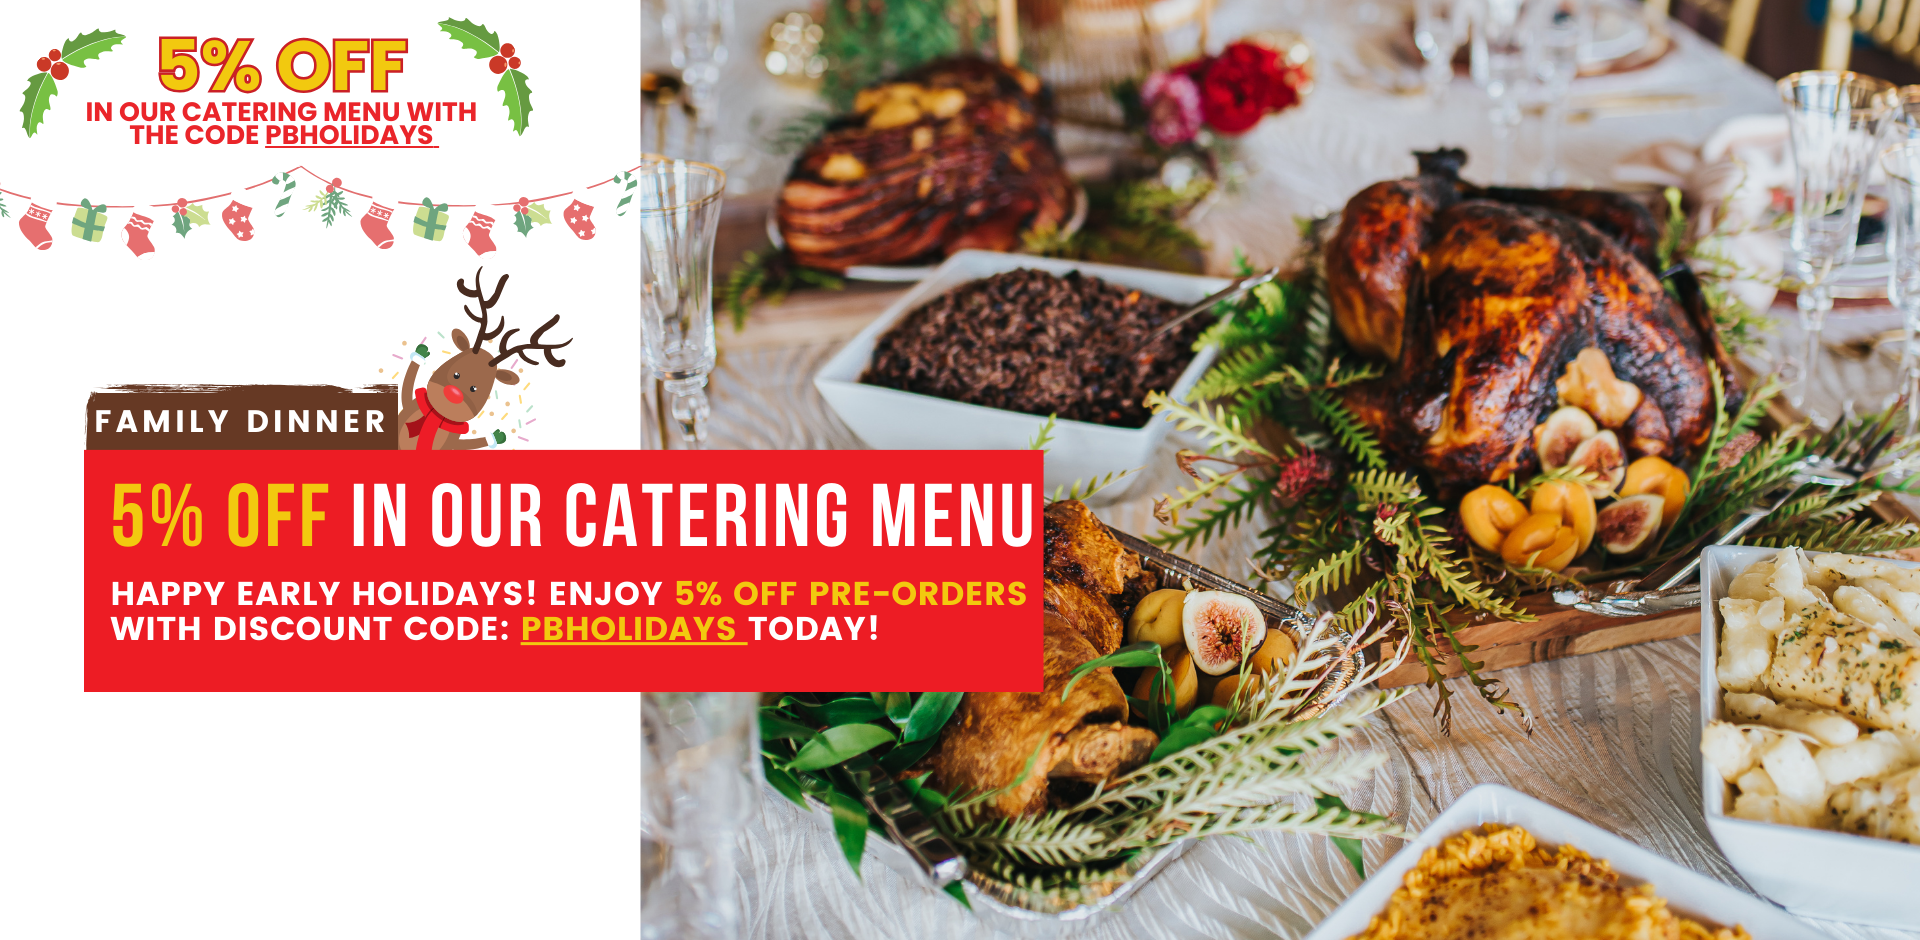 Hou Hou  Catering Menu - Order online in 5 minutes